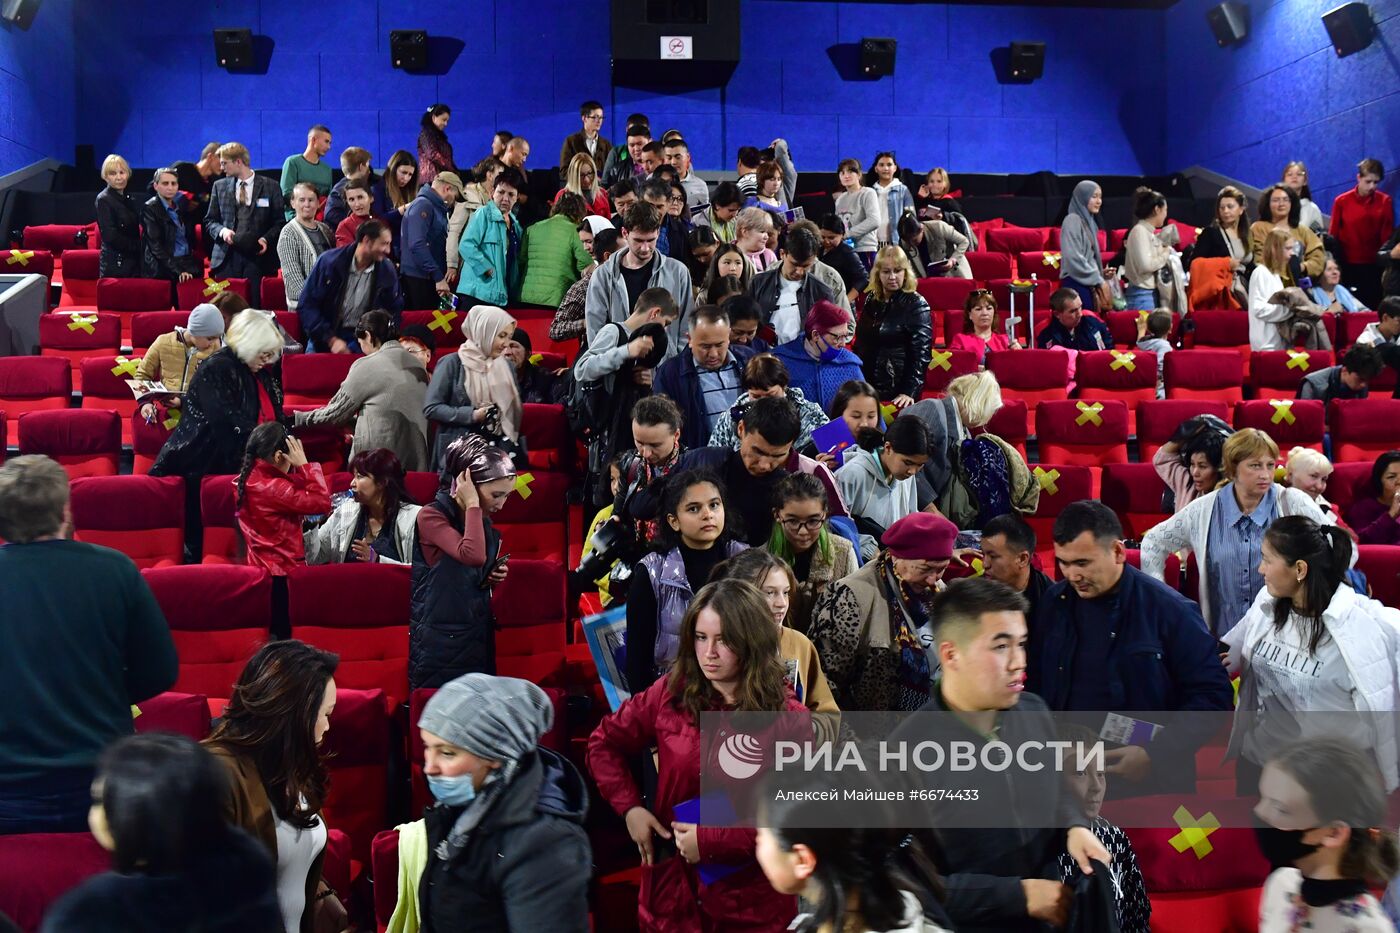 Закрытие фестиваля "Дни российского кино" в Киргизии